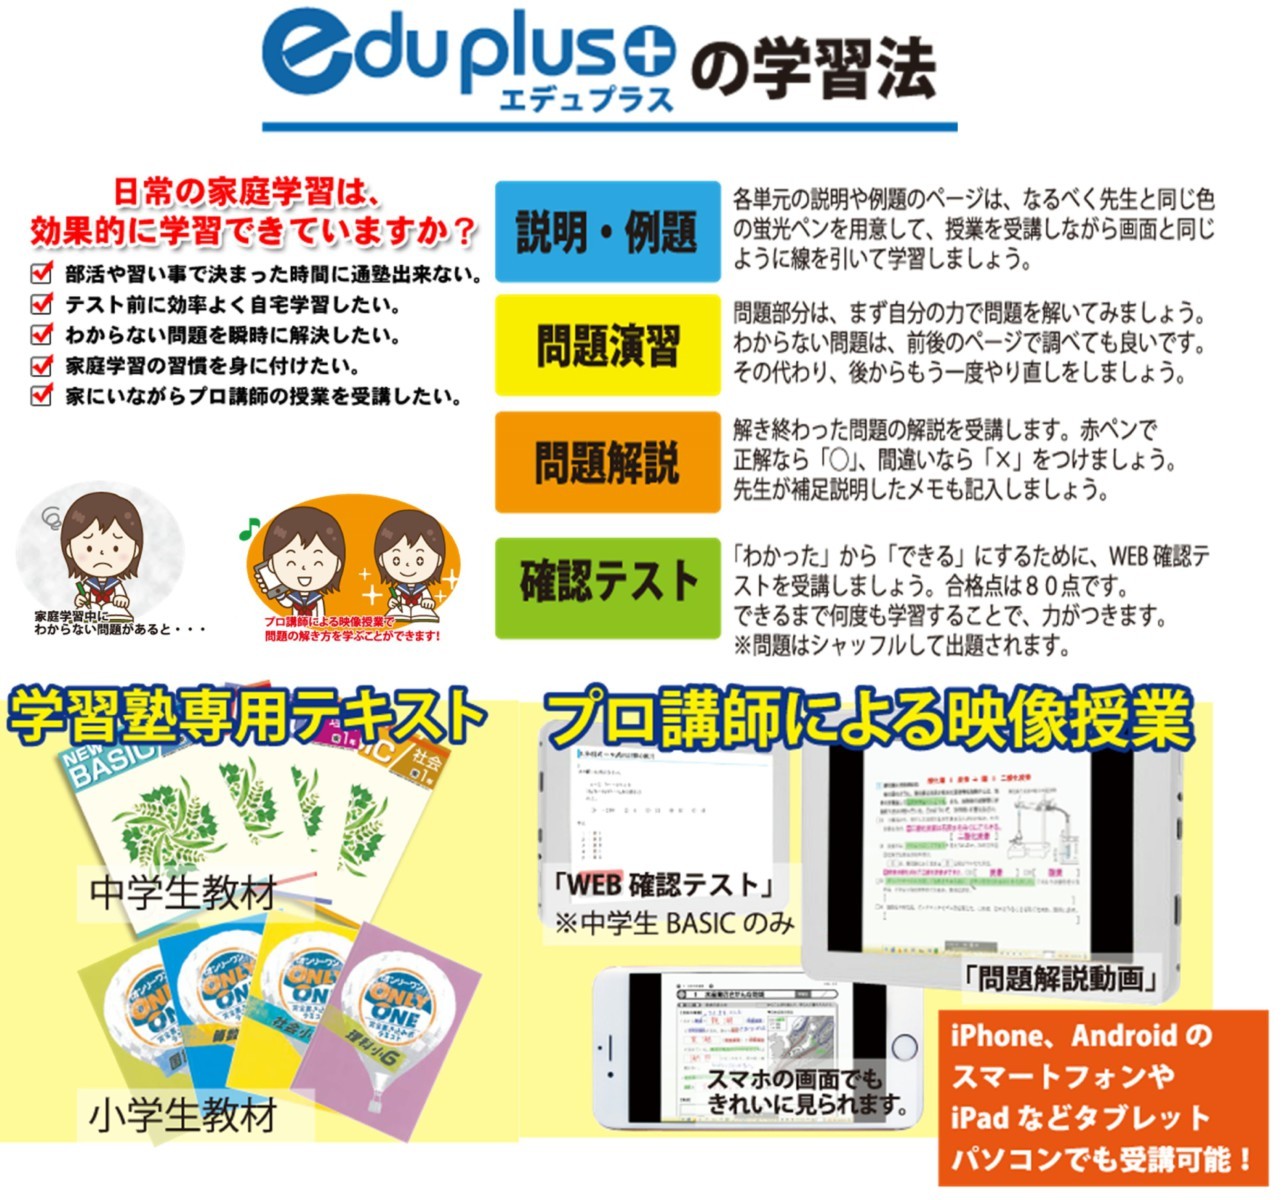 ICT教材『eduplus』